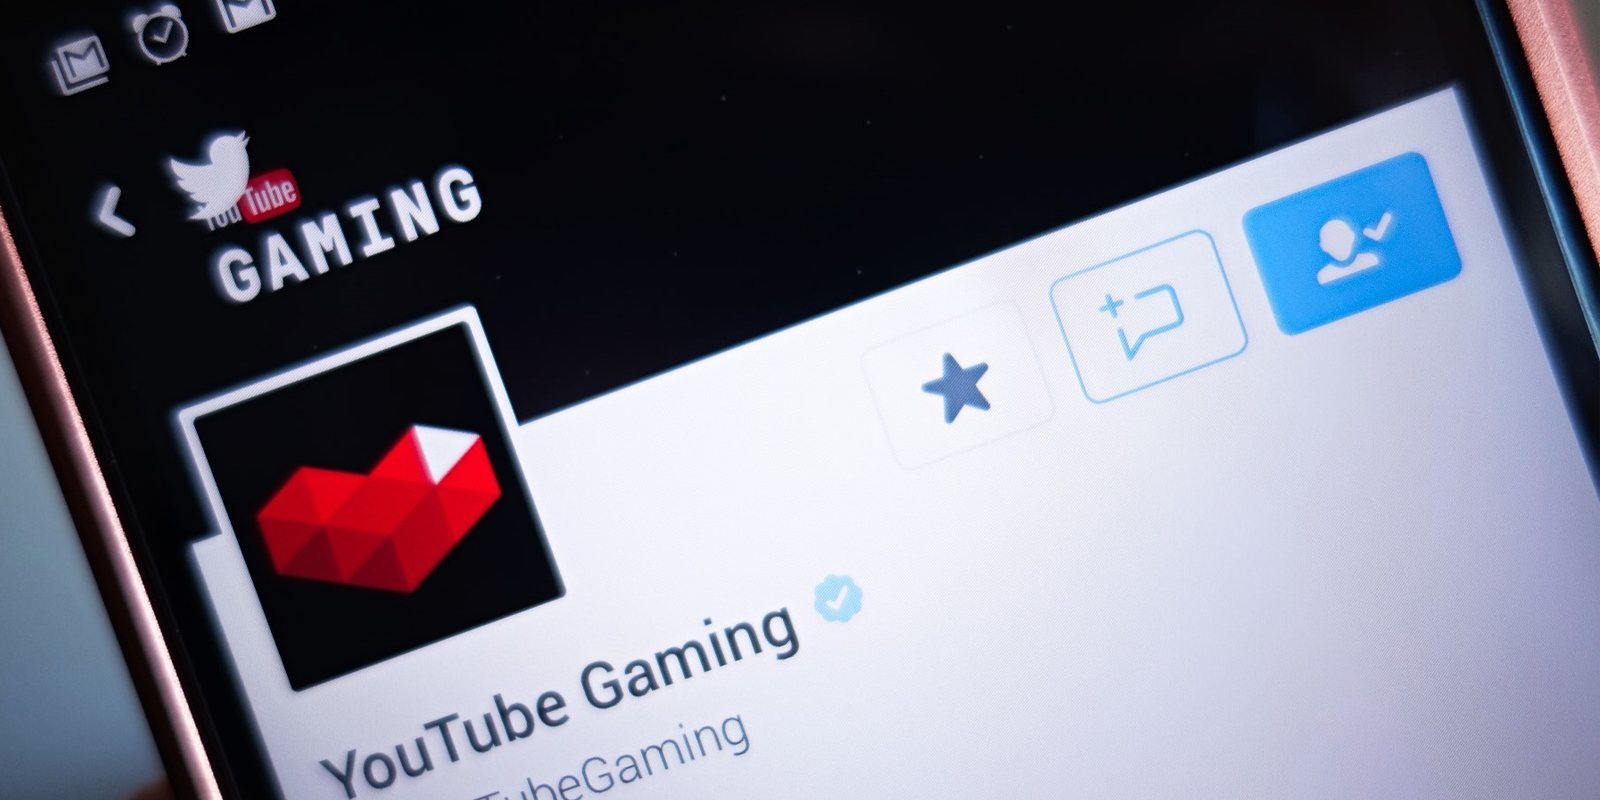 YouTube Gaming cerrará sus servidores el próximo 30 de mayo